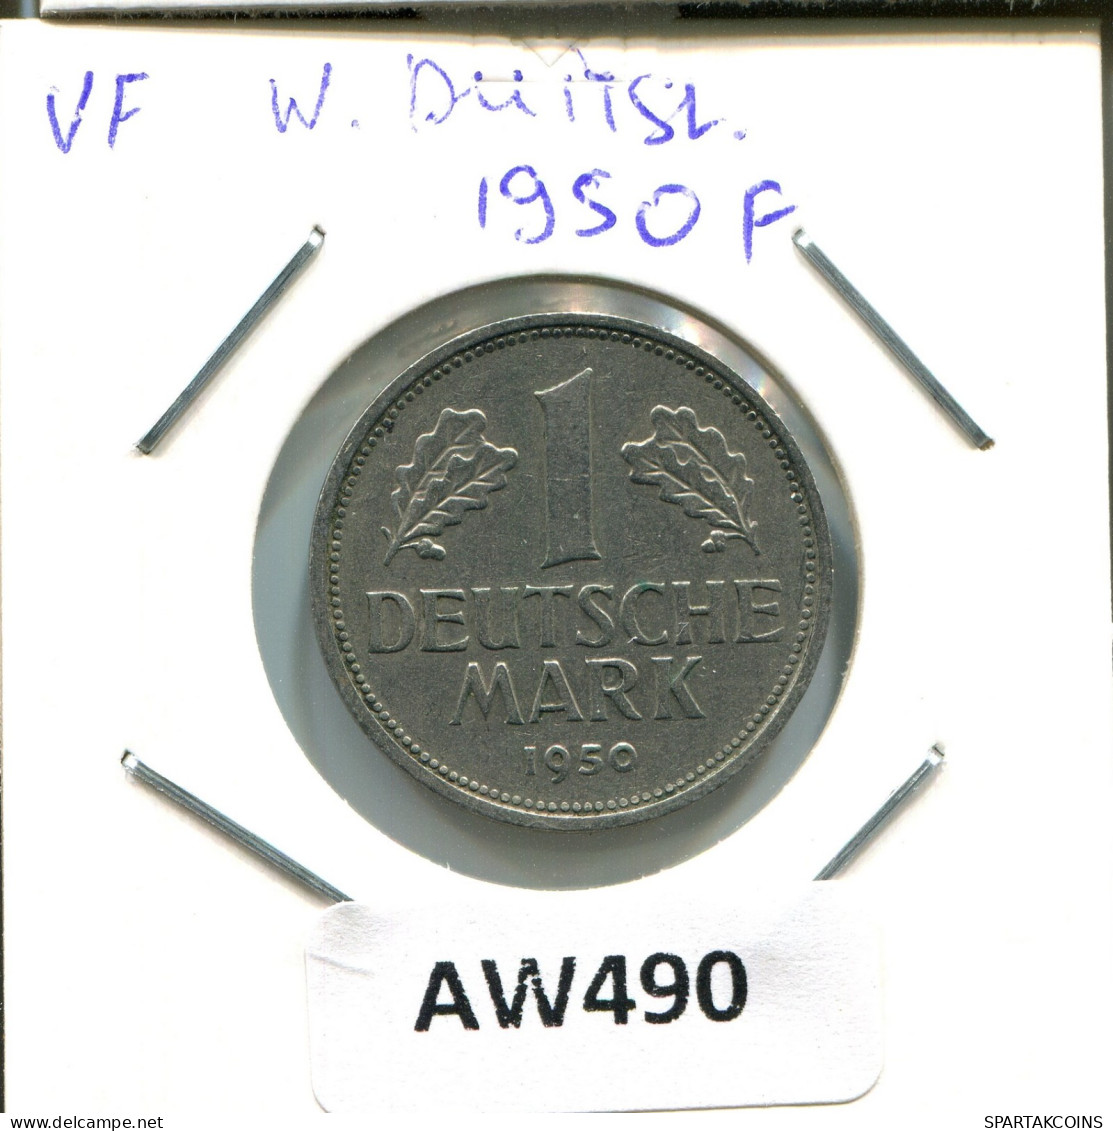 1 DM 1950 F ALEMANIA Moneda GERMANY #AW490.E.A - 1 Mark